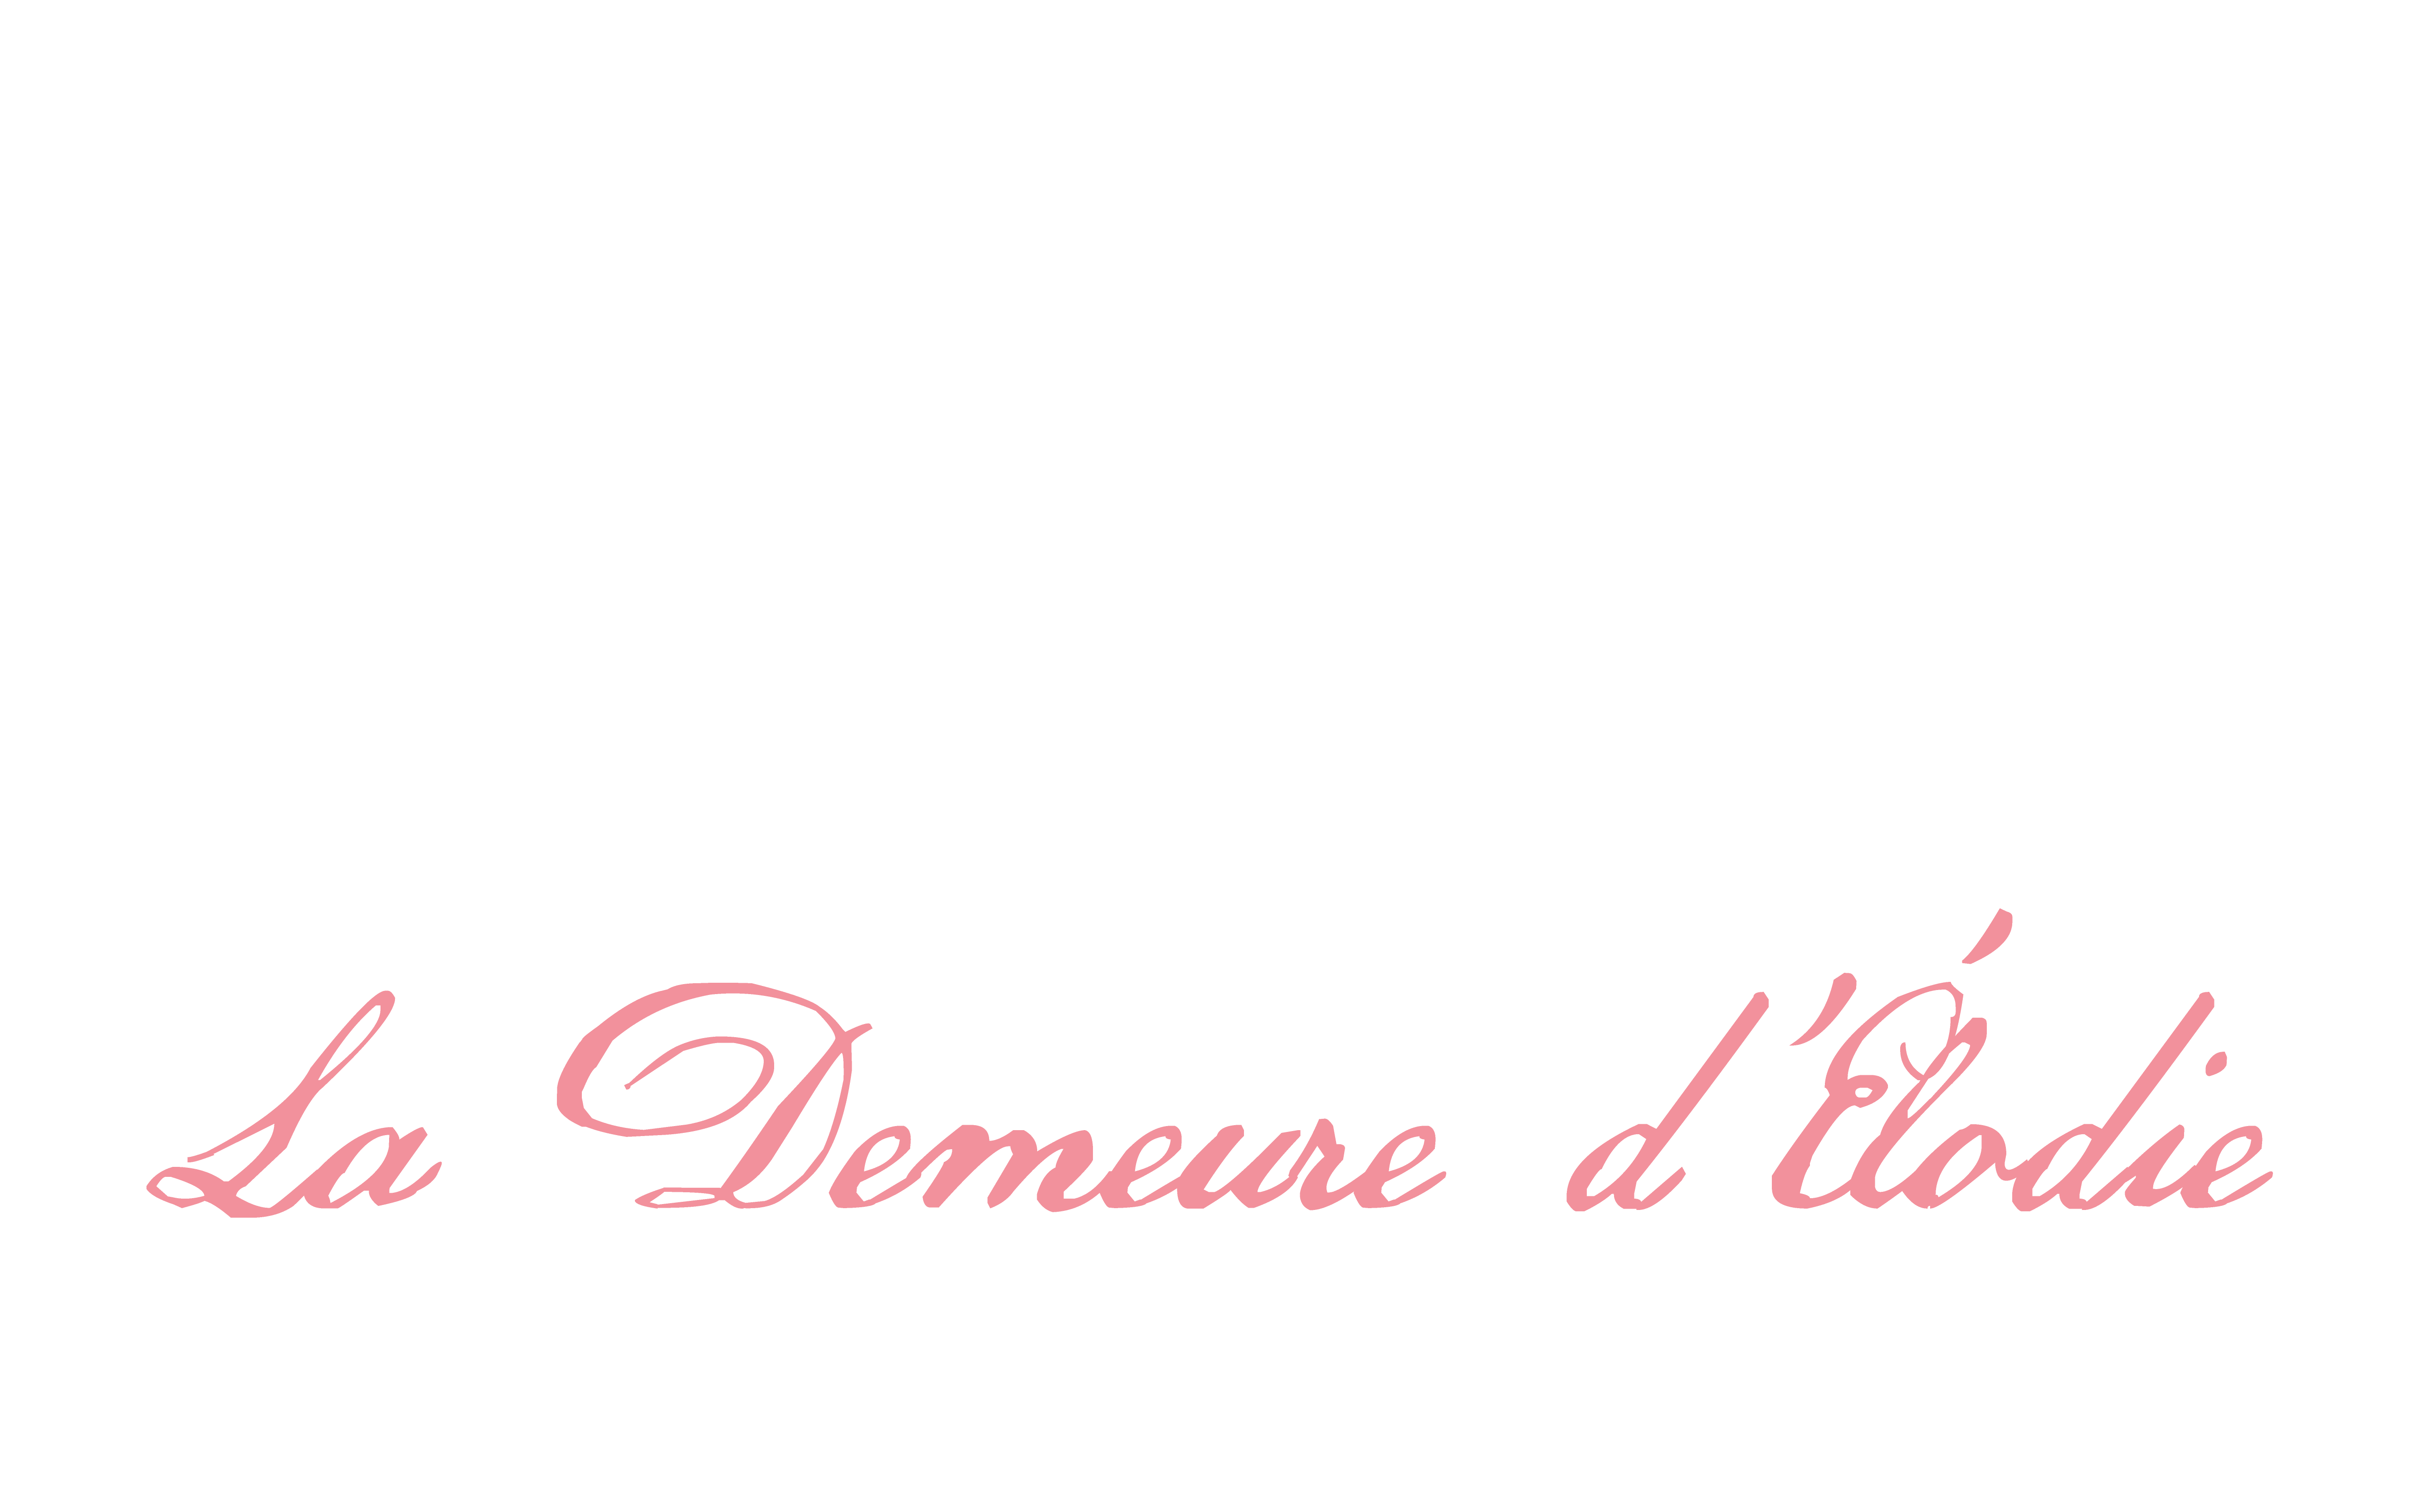 La Demeure d'Élodie - appartement, suites et chambres d'hôtes et spa, Avenue de Champagne à Épernay